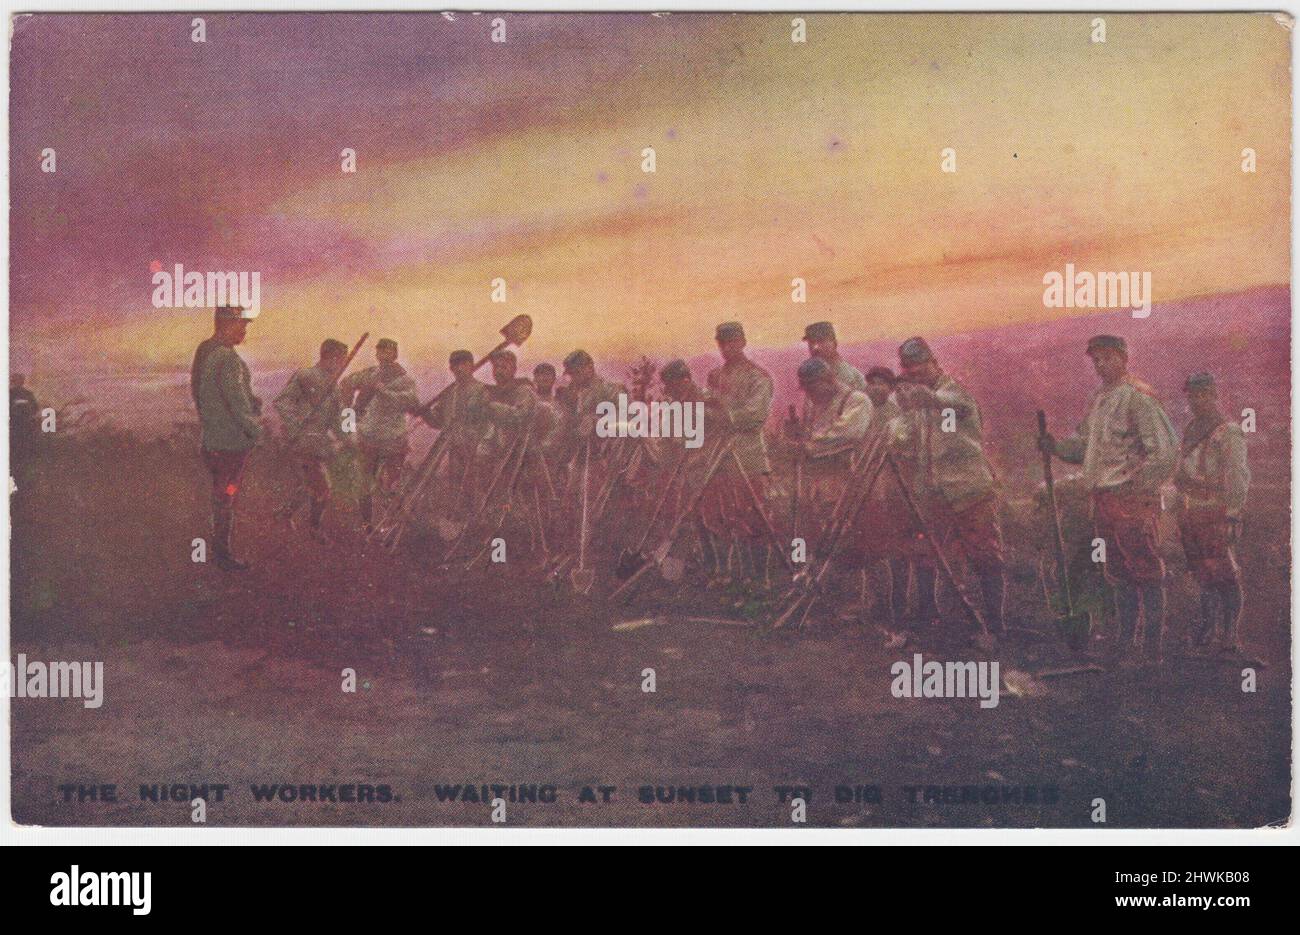 "Les travailleurs de nuit. Waiting at Sunset to creuser des tranchées » : carte postale de la première Guerre mondiale montrant des soldats français rassemblés avec des bêches, attendant de commencer à creuser des tranchées. Banque D'Images